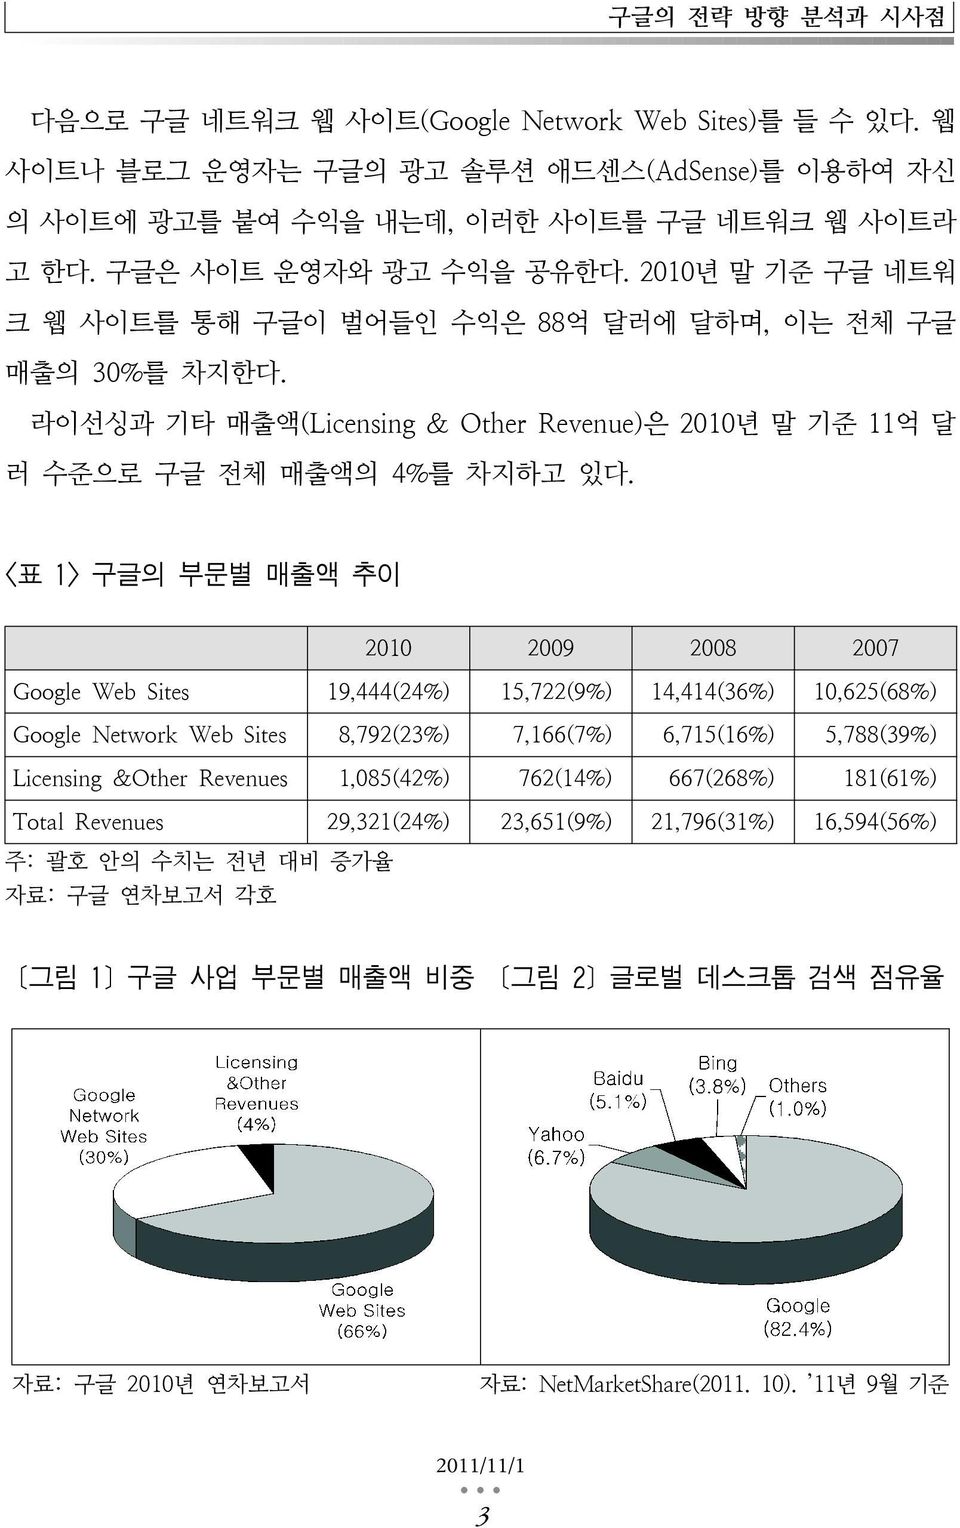 <표 1> 구글의 부문별 매출액 추이 2010 2009 2008 2007 Google Web Sites 19,444(24%) 15,722(9%) 14,414(36%) 10,625(68%) Google Network Web Sites 8,792(23%) 7,166(7%) 6,715(16%) 5,788(39%) Licensing &Other Revenues